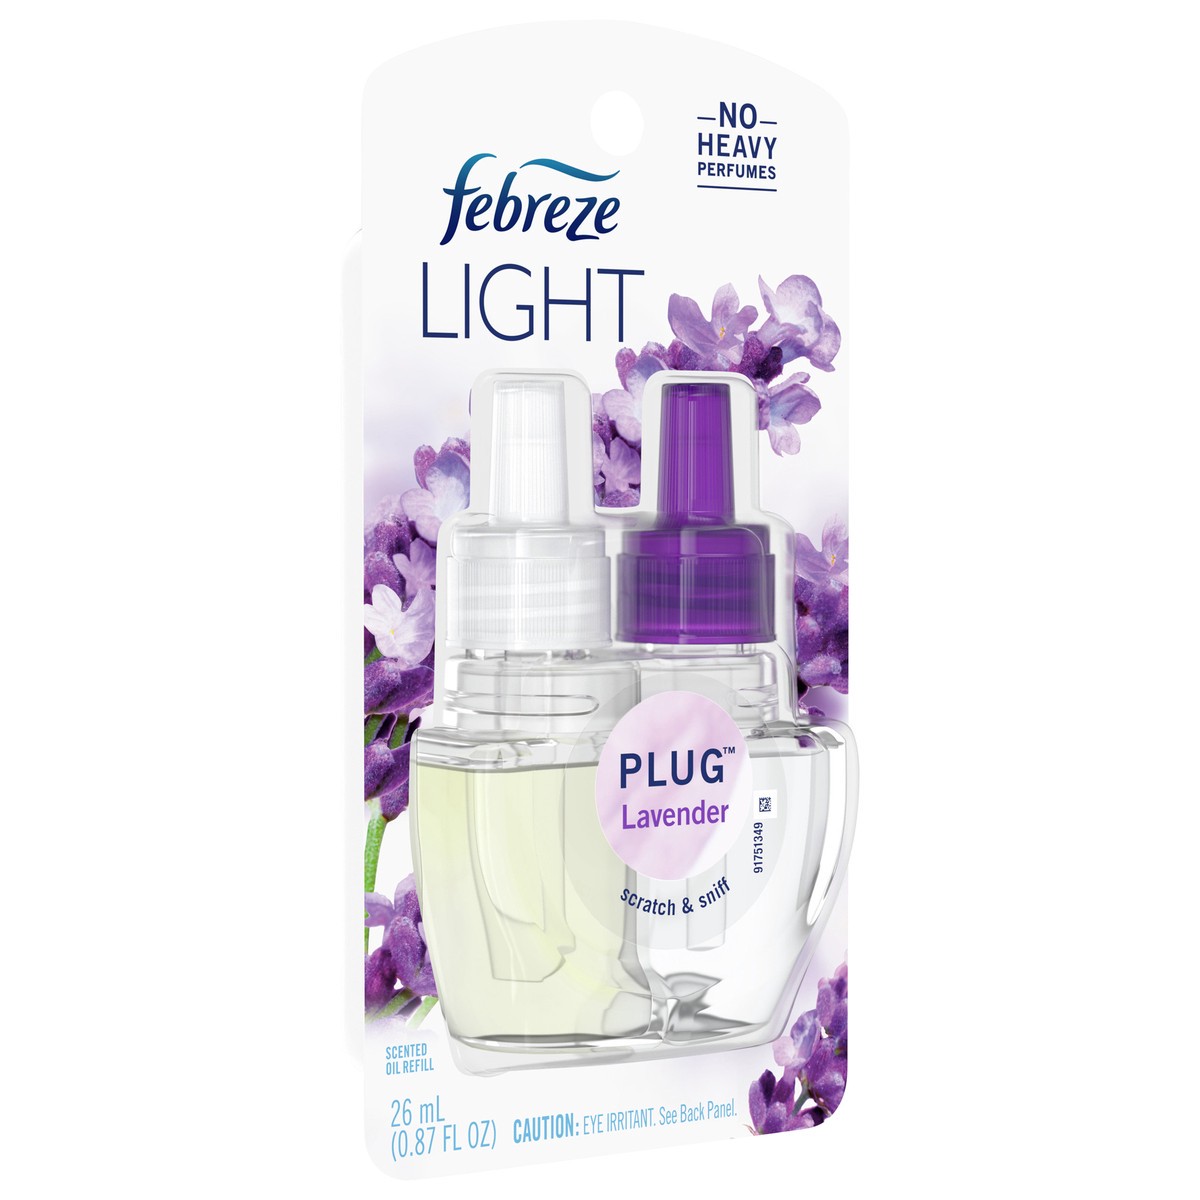 slide 2 of 4, Febreze Plug Light Lavender Scented Oil Refill 26 ml, 26 ml